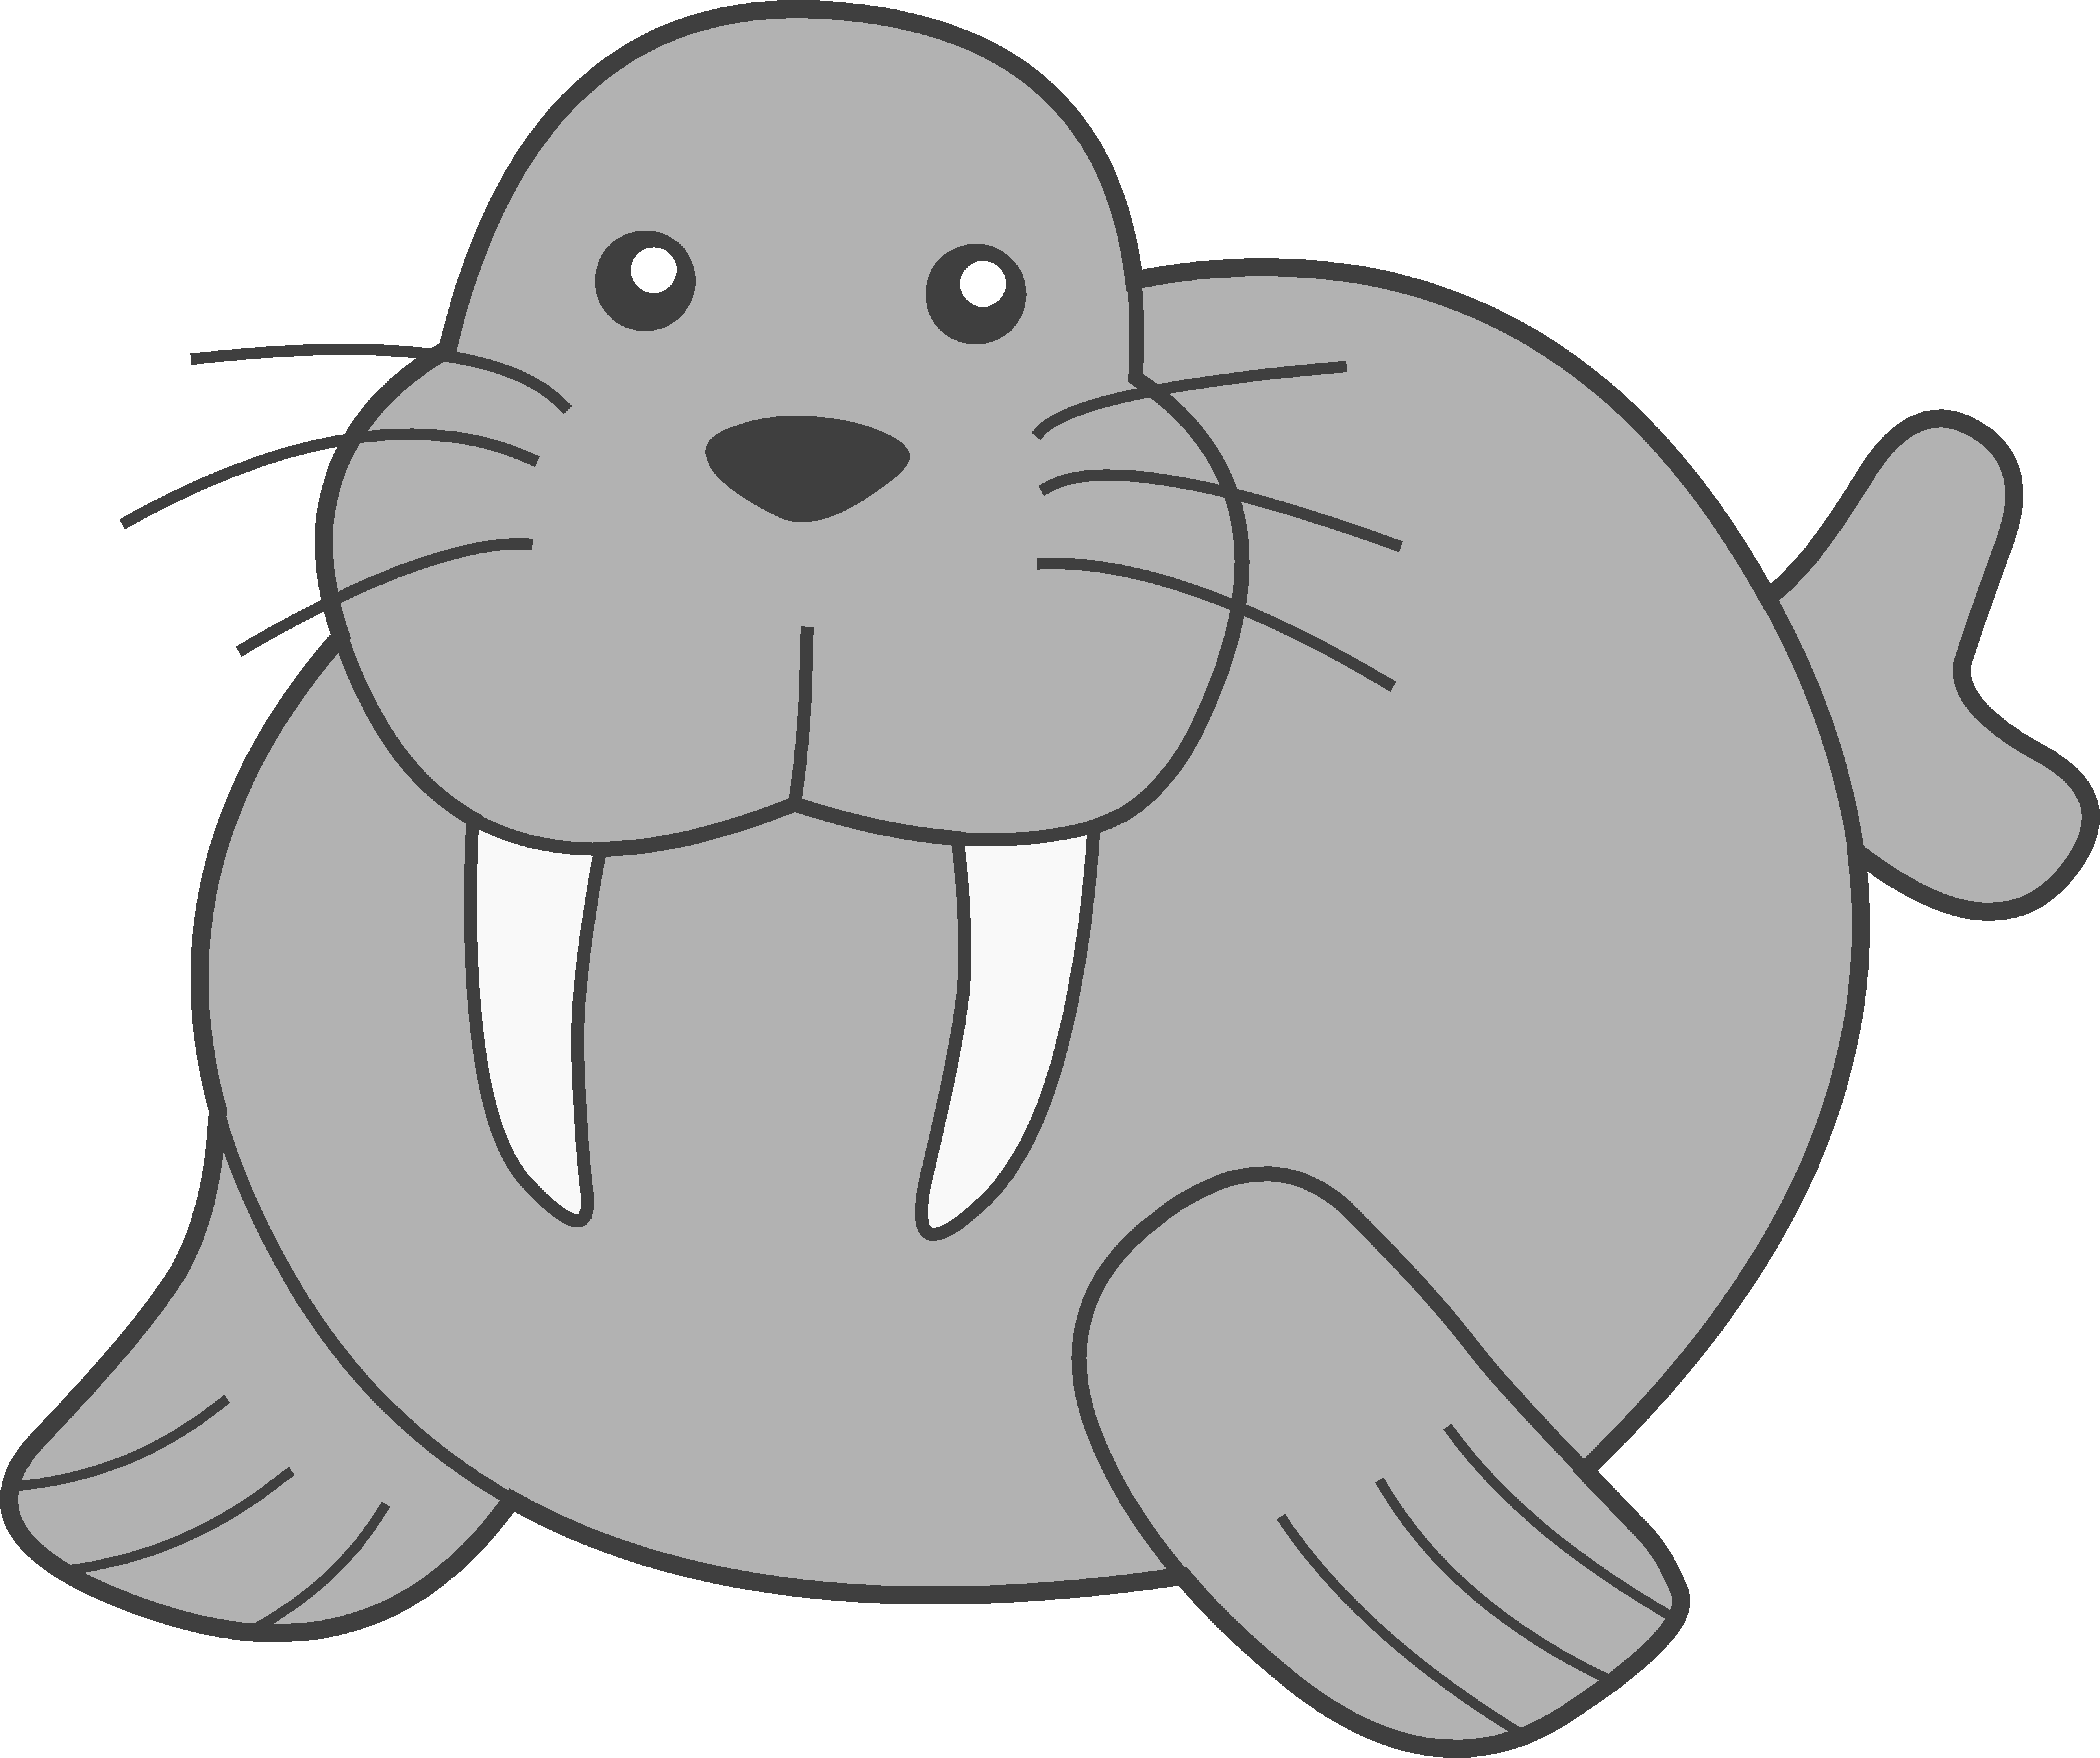 Seal clipart adorable.